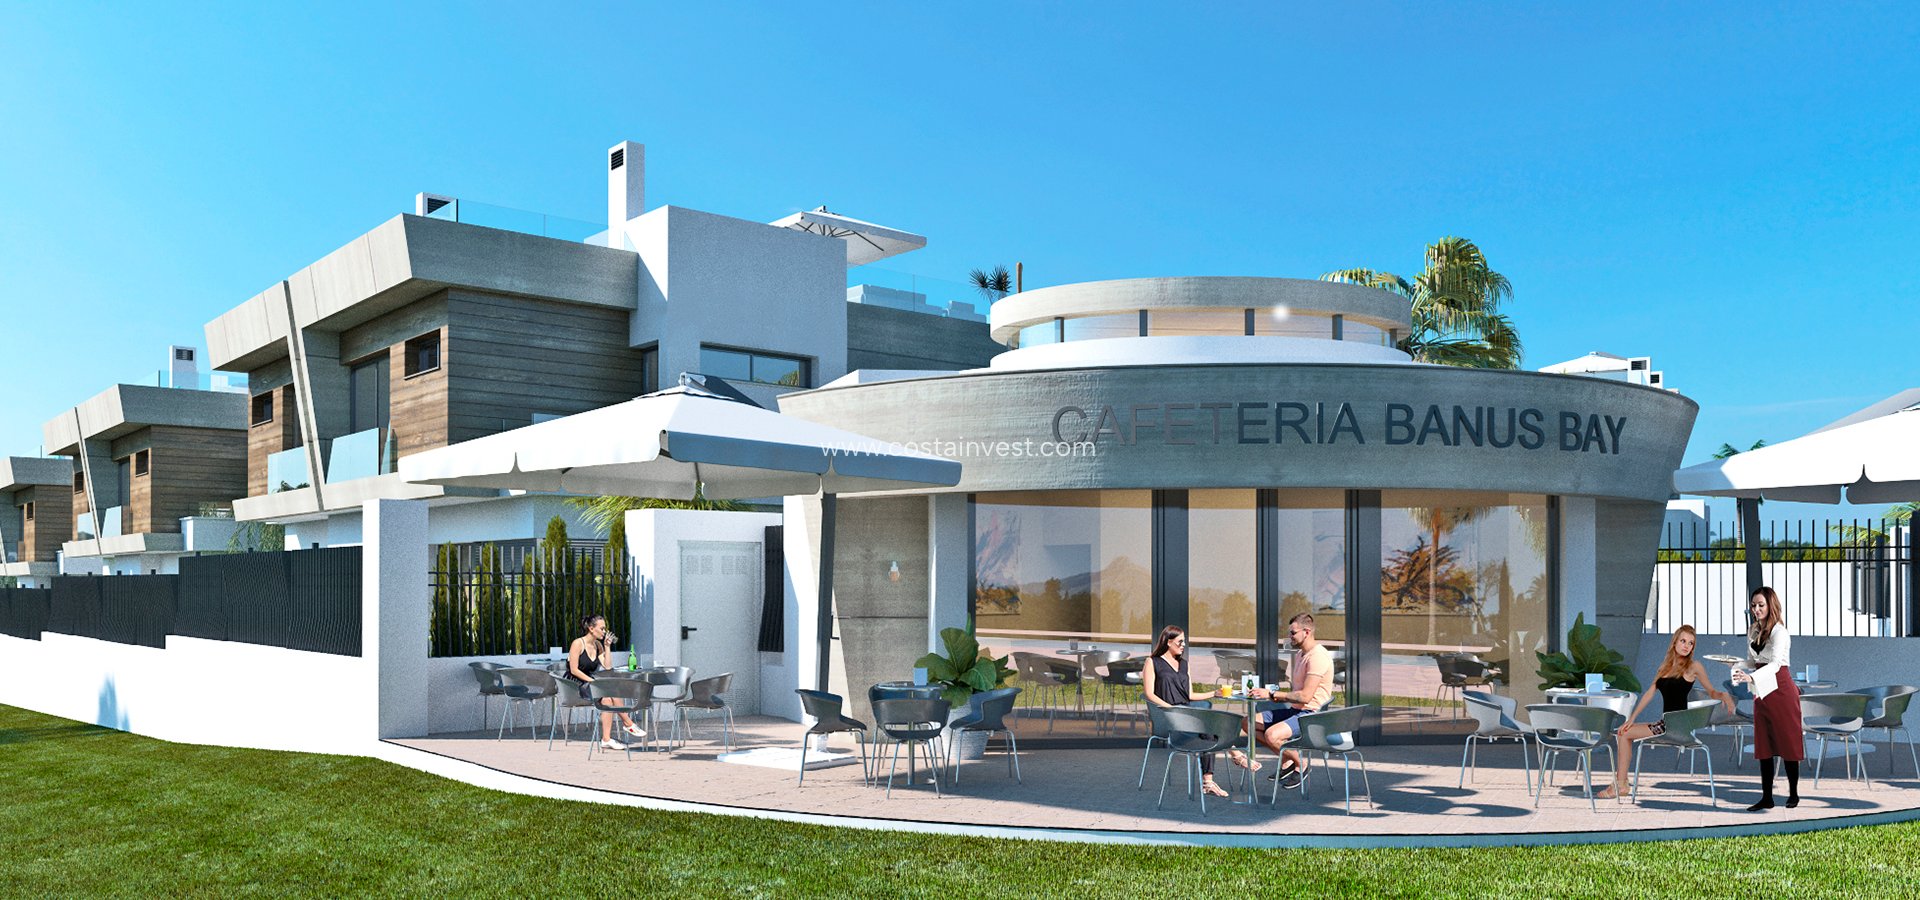 Construcția nouă - Casă semi independentă - Marbella 